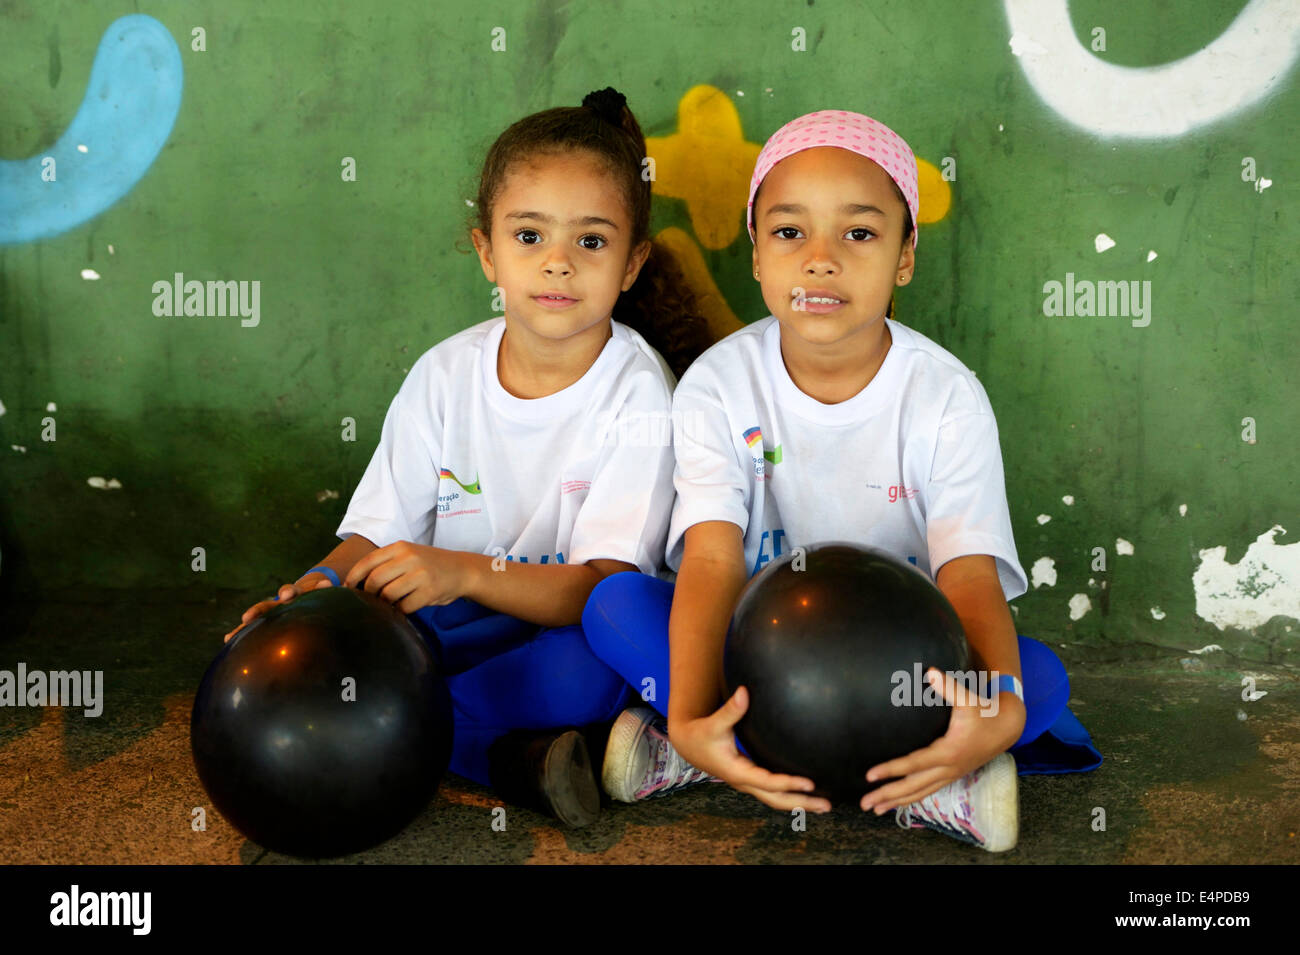 Les enfants à un événement sportif, l'assainissement des taudis, Morro dos Prazeres favela, Rio de Janeiro, Brésil Banque D'Images